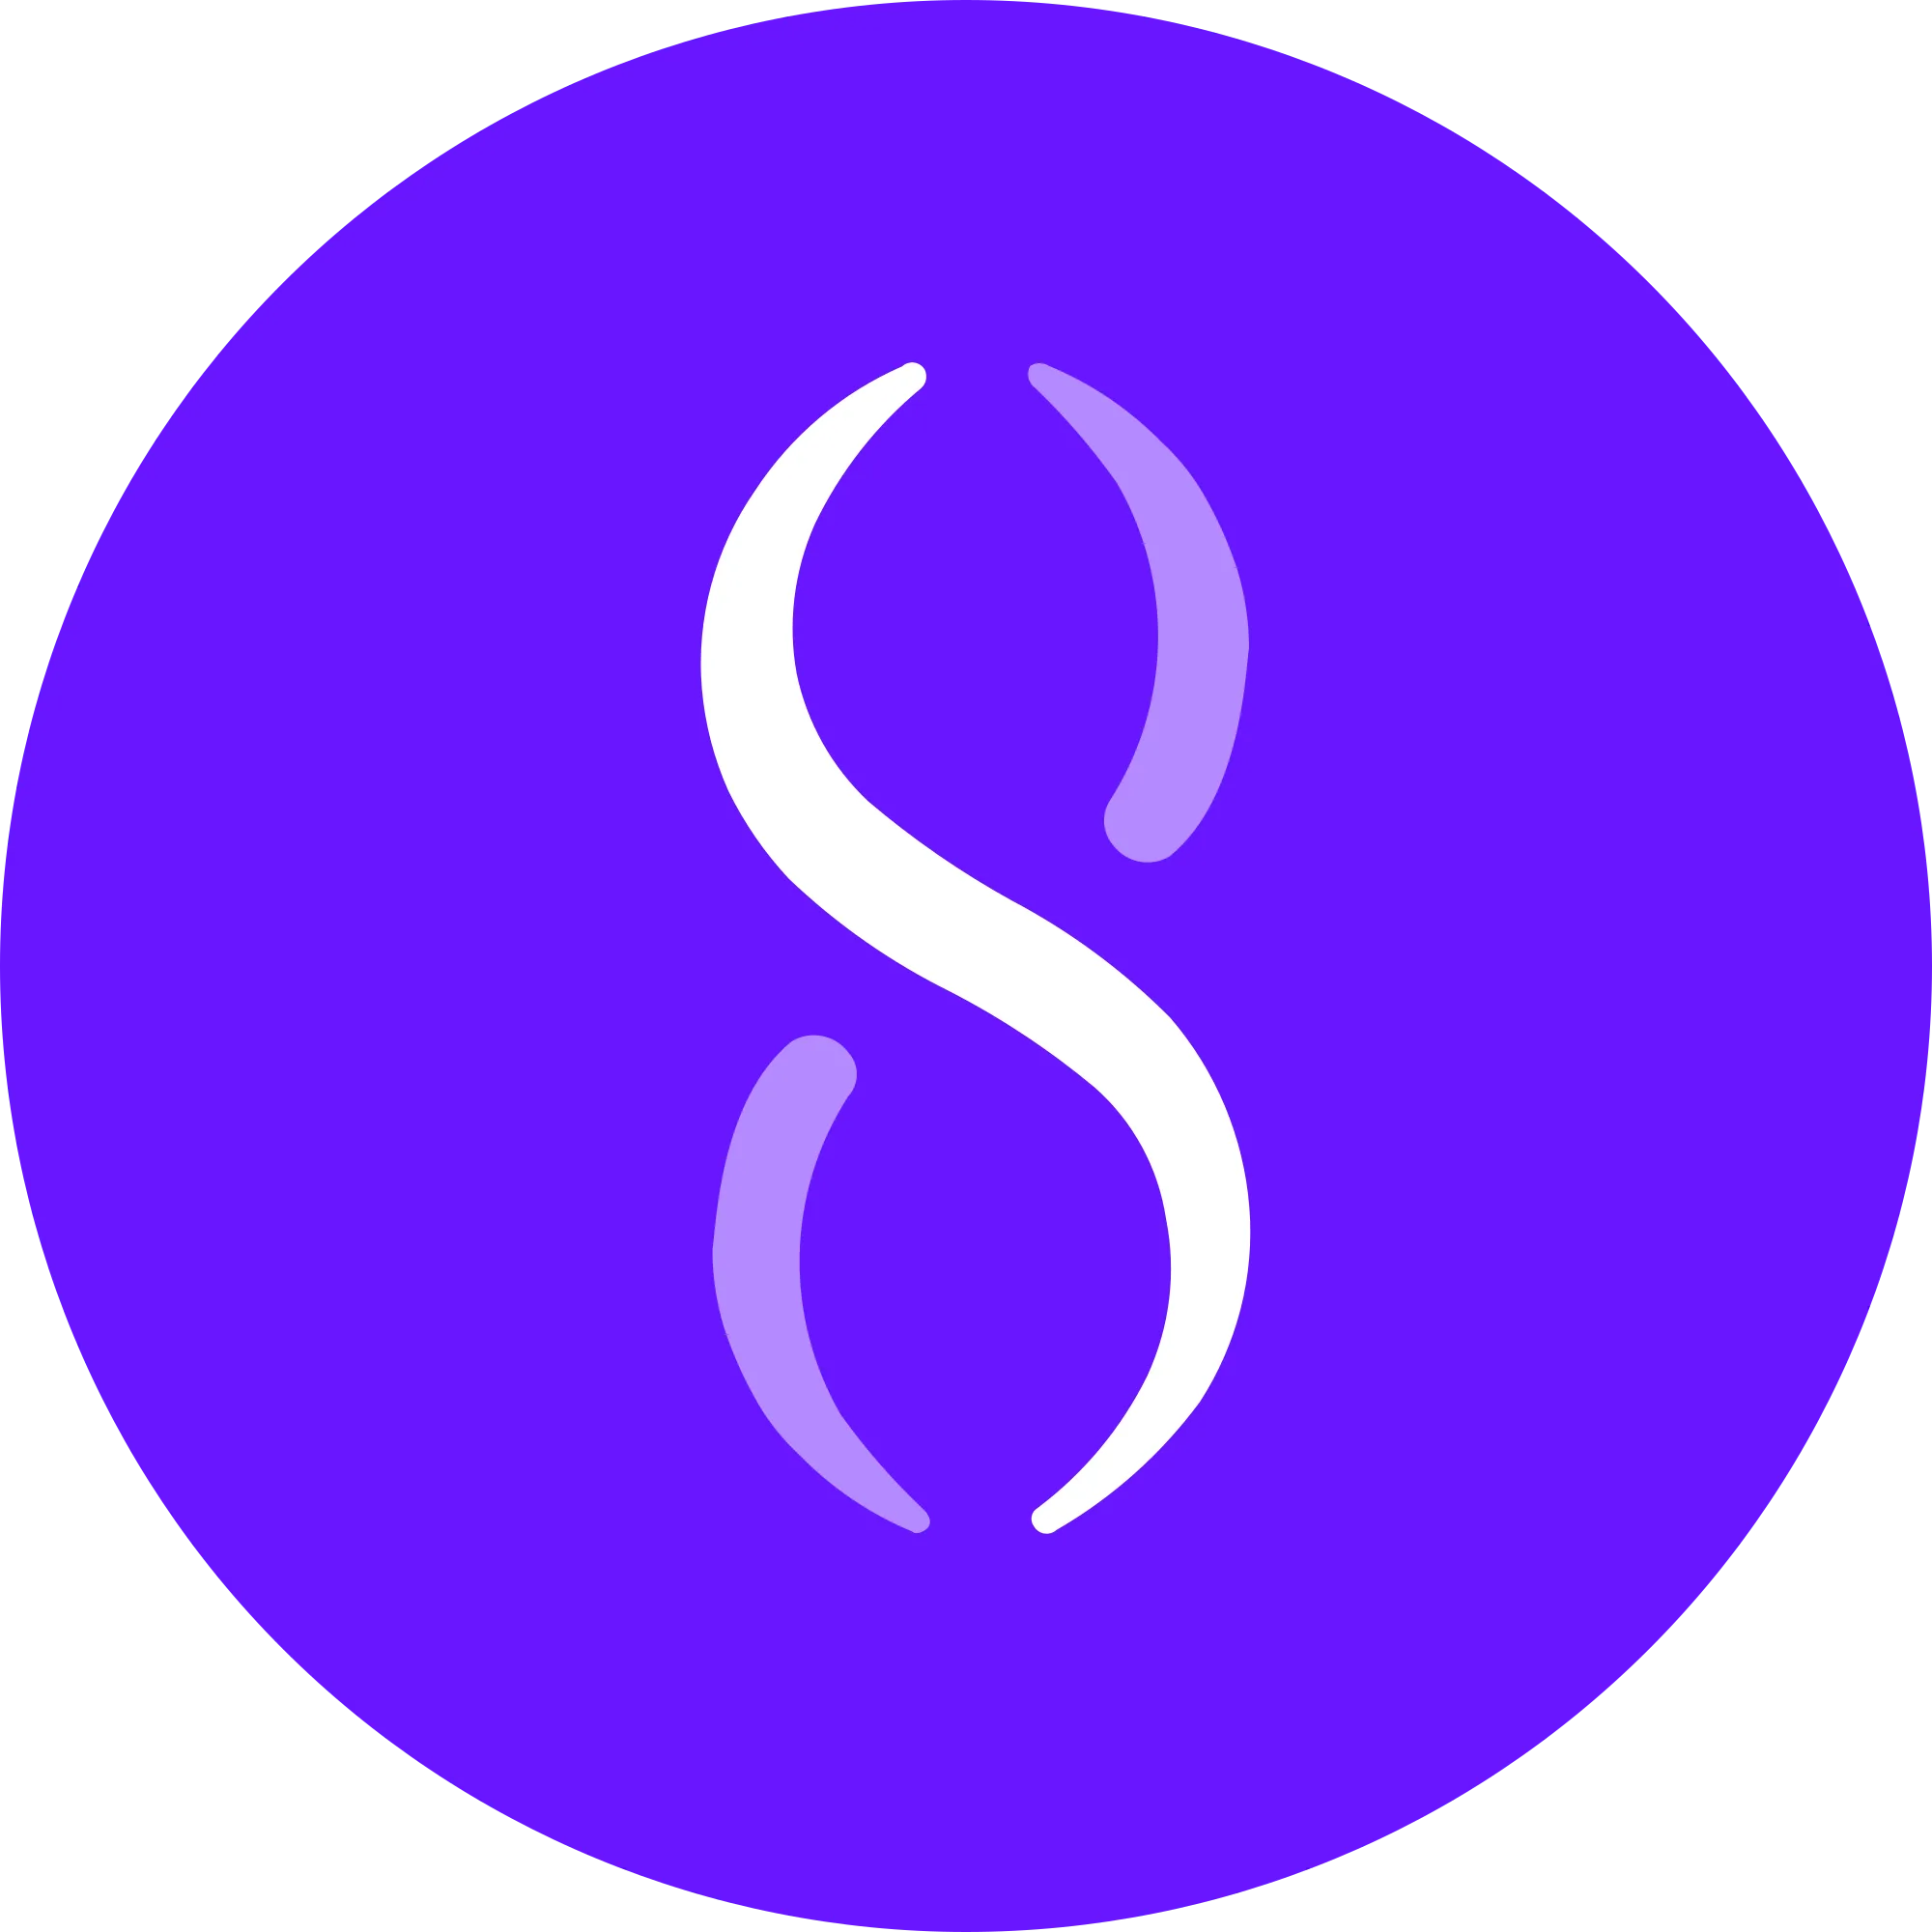 SingularityNET logo in png format